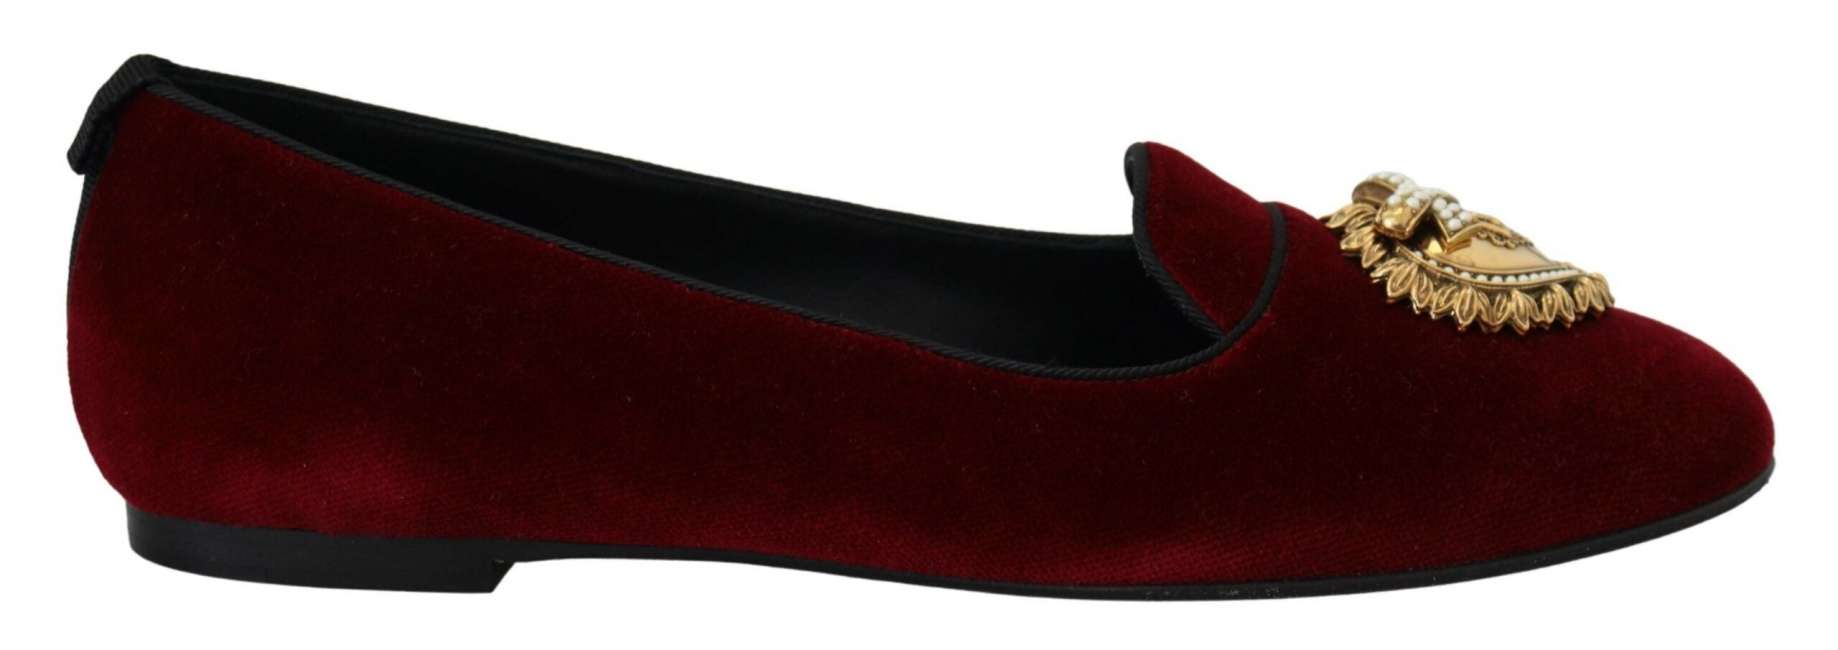 Priser på Dolce & Gabbana Bordeaux Velvet Slip-On Loafers Flats Shoes